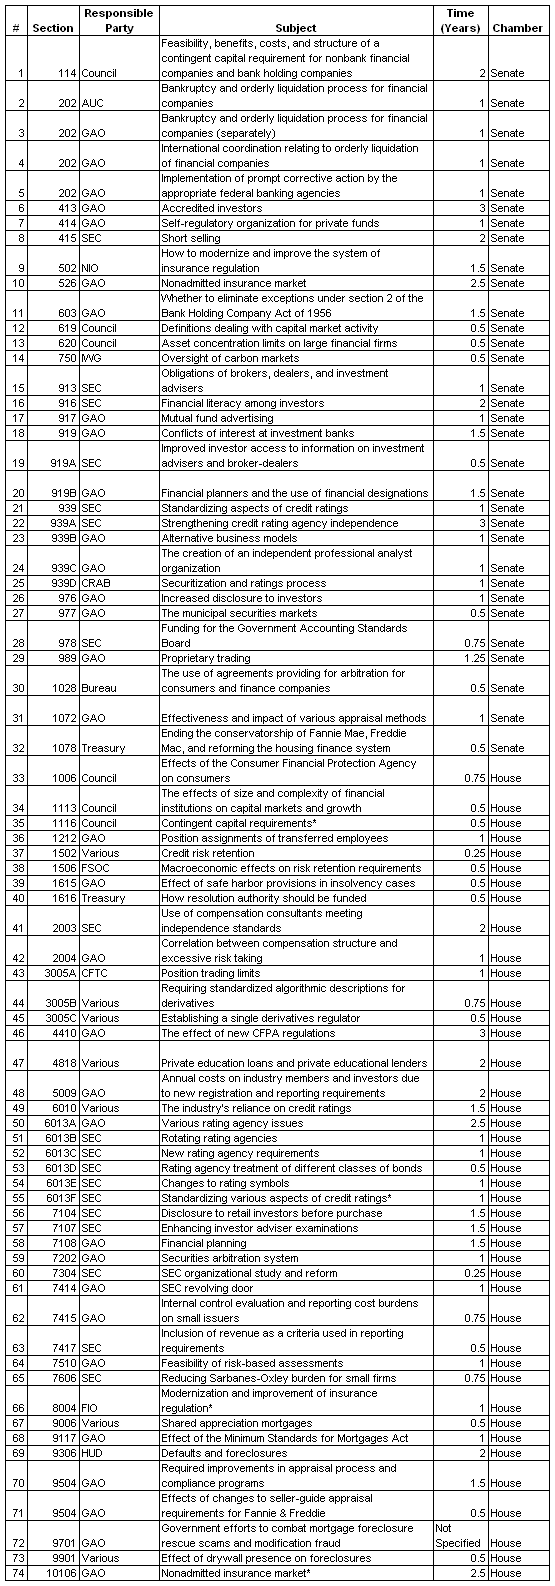 finref studies full list 2010-06.PNG